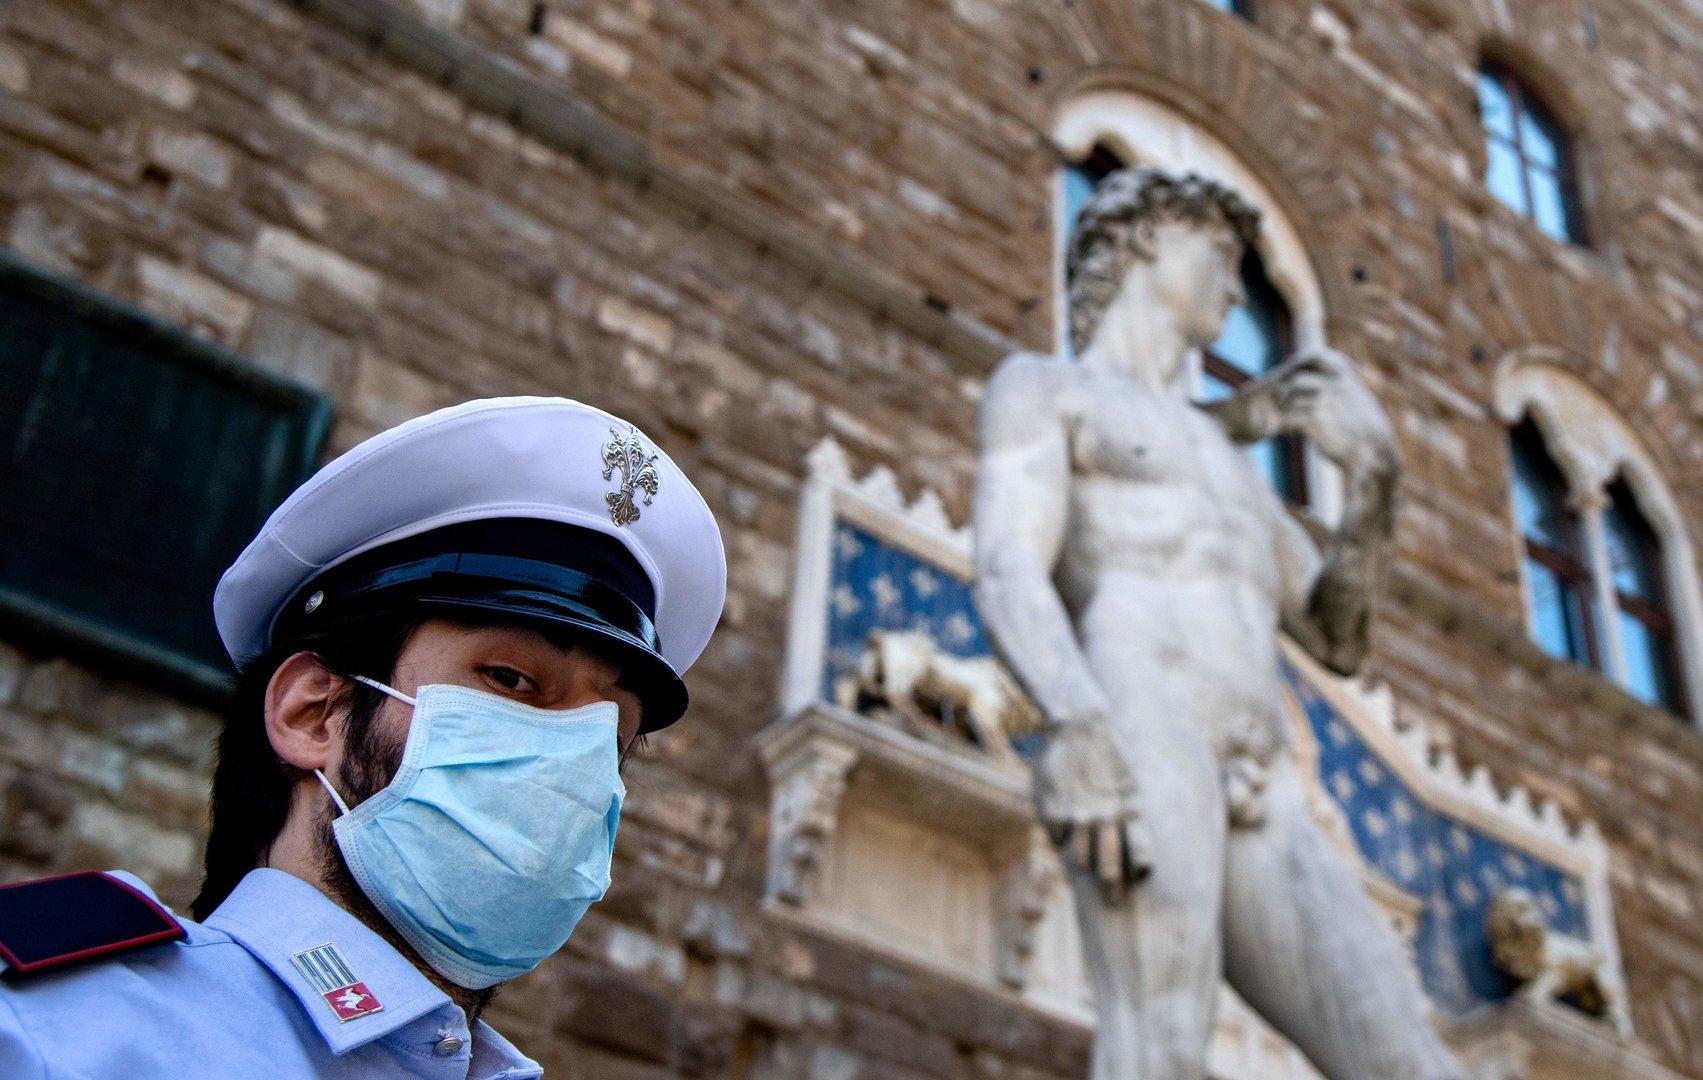 Italienische Museen haben 70 Prozent weniger Besucher